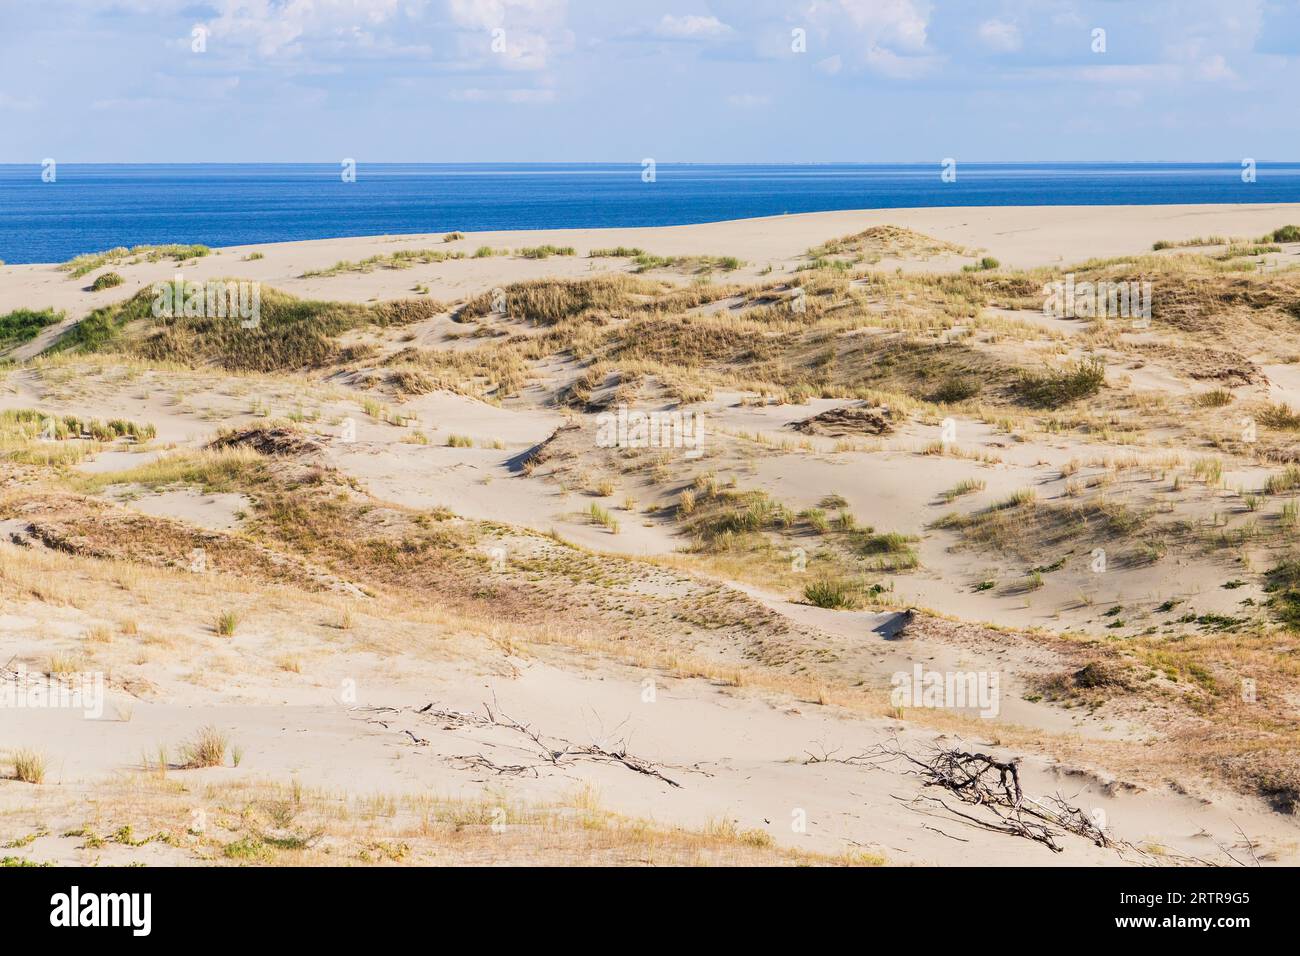 Paesaggio di Curonian Spit, dune costiere sabbiose con erba. Oblast' di Kaliningrad, Russia Foto Stock